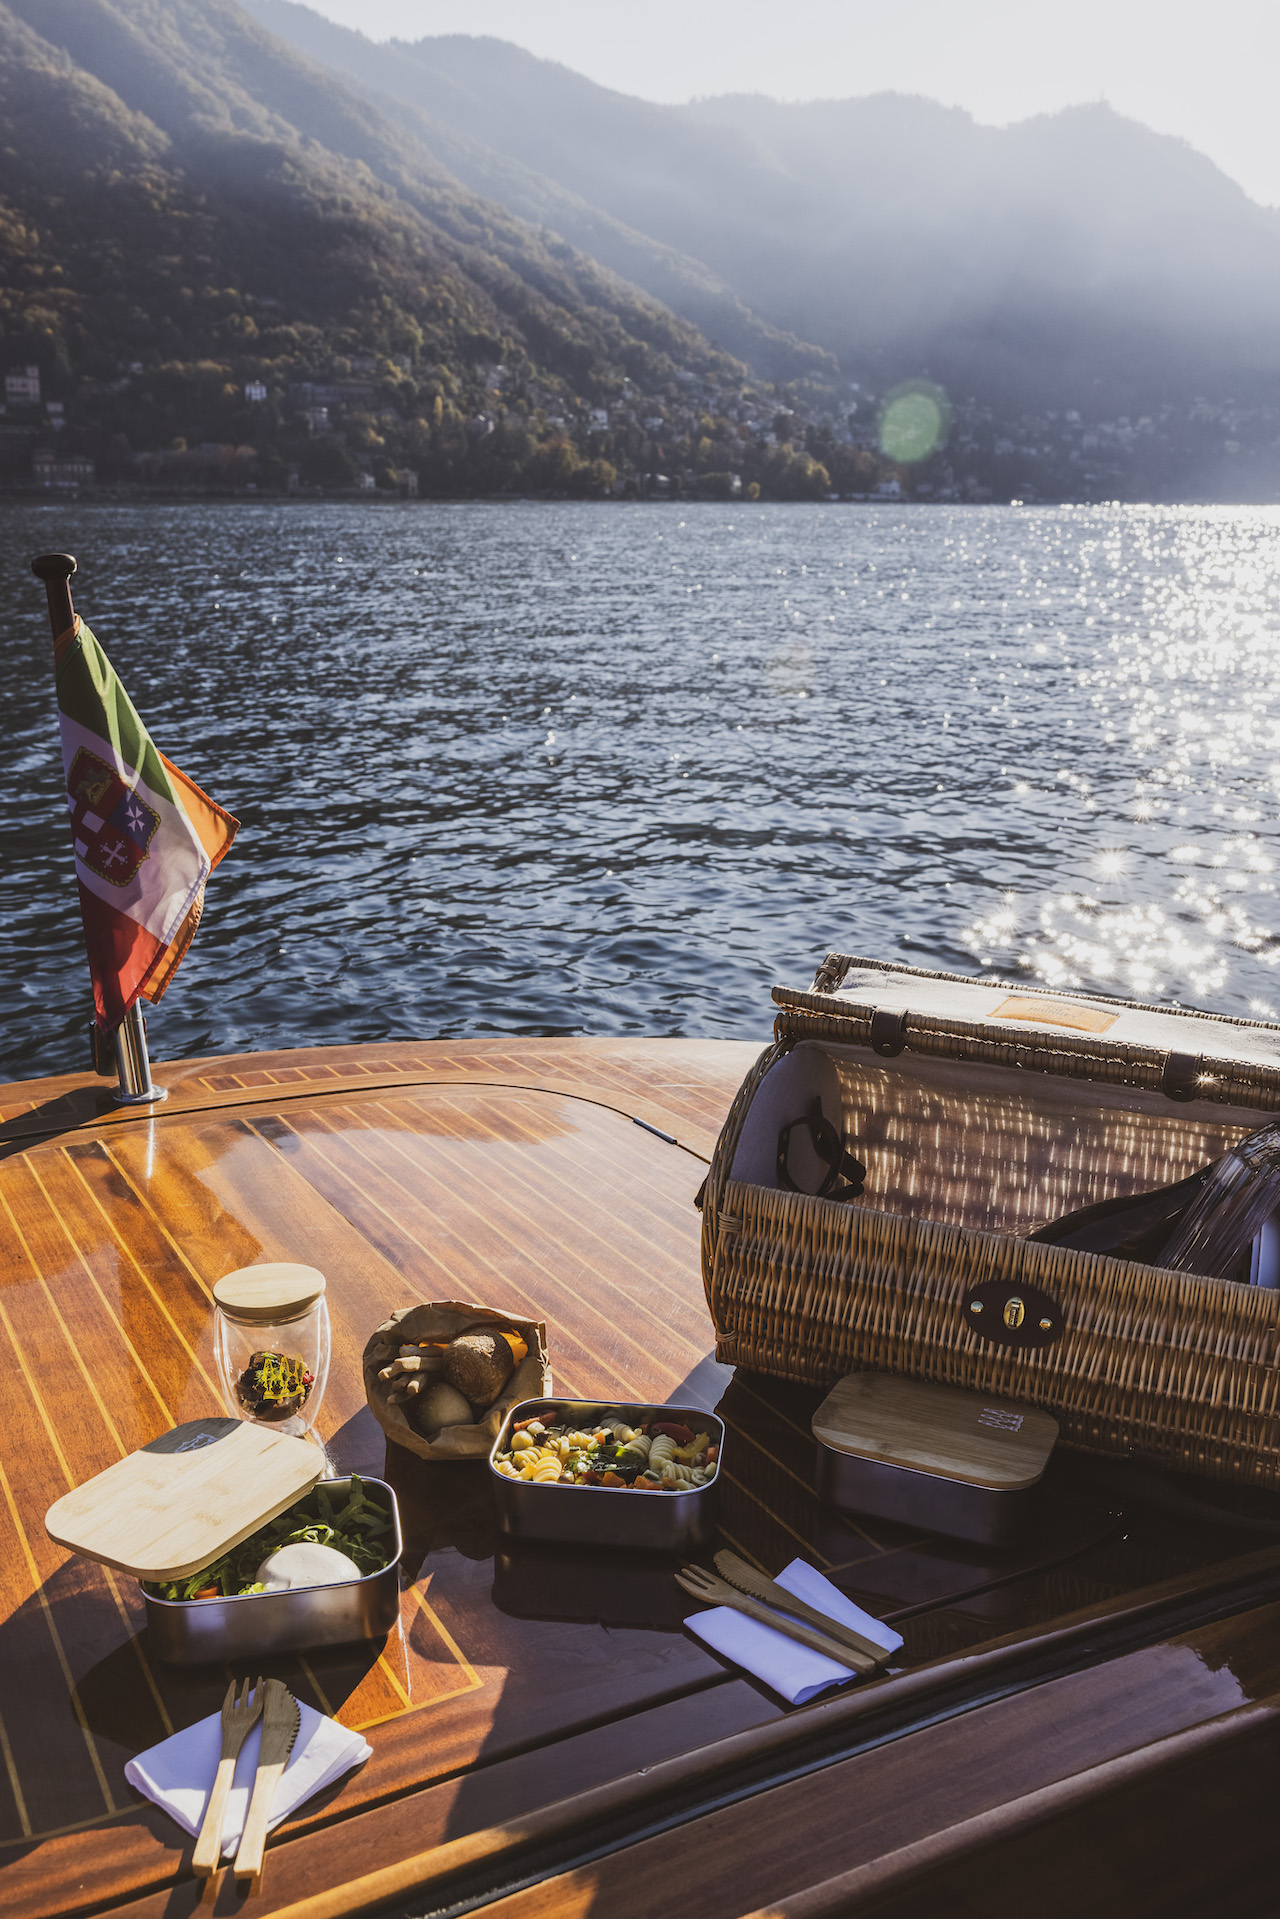 Passalacqua Hotel Lake Como Boat Picnic